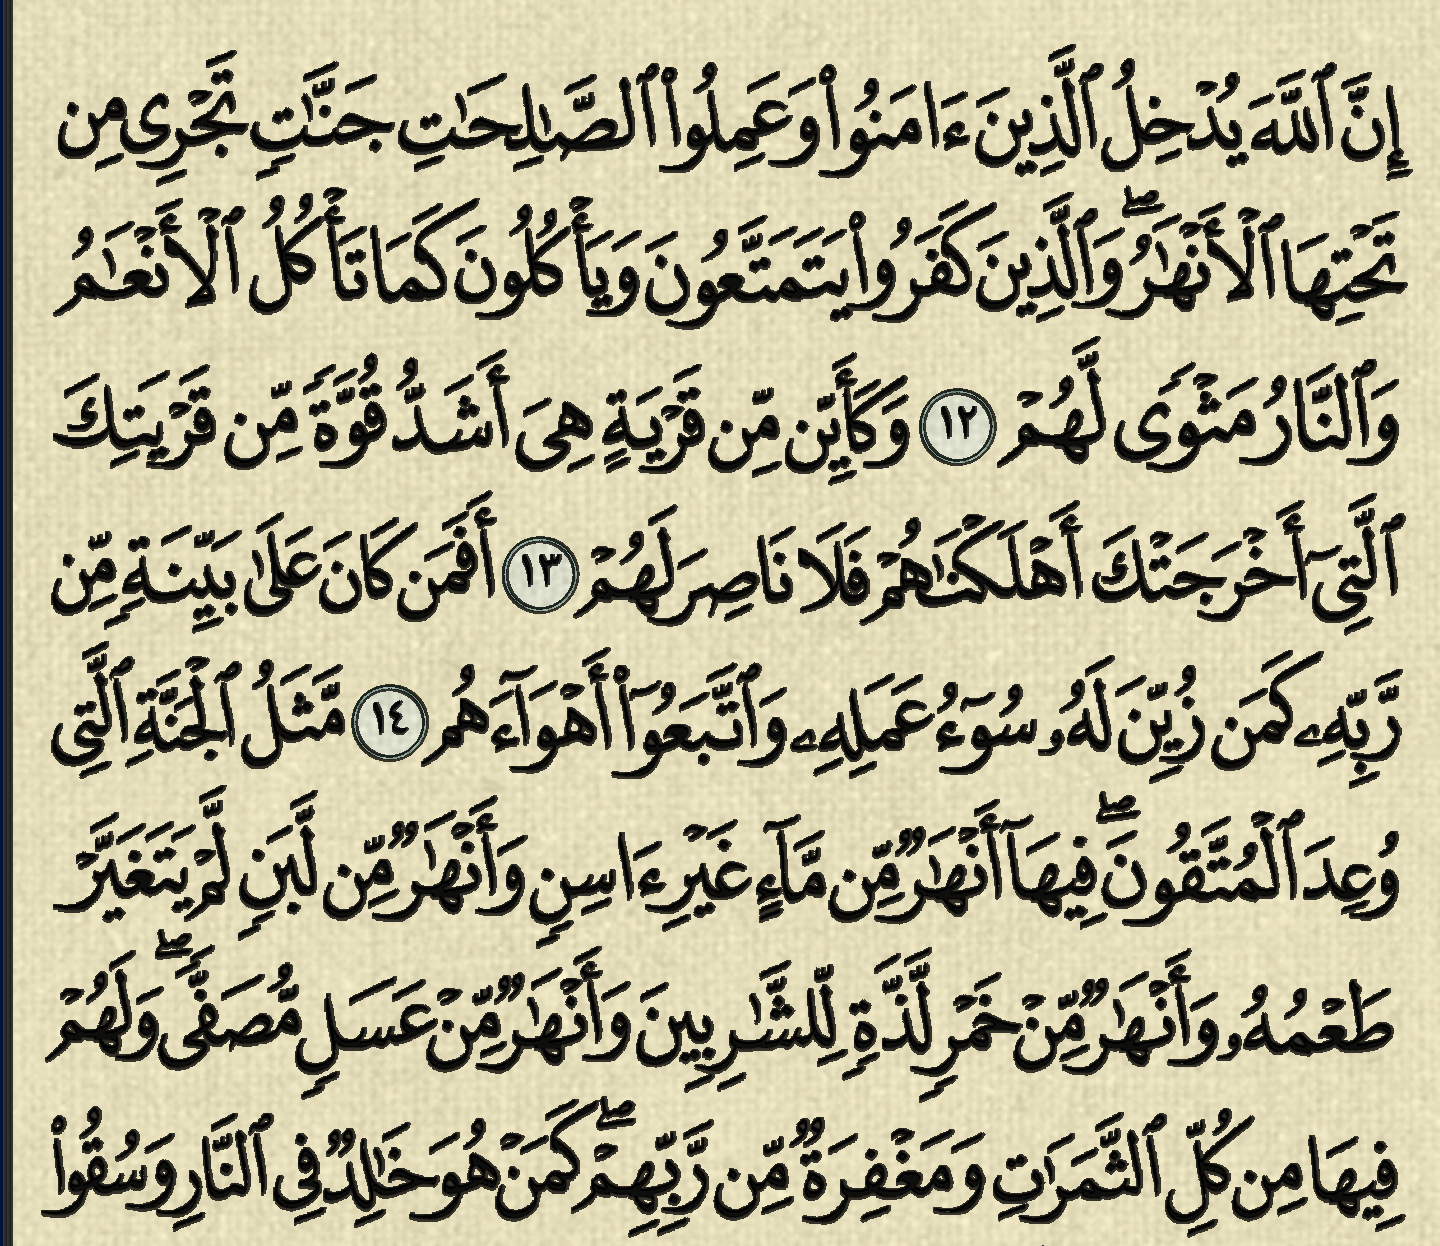 شرح, وتفسير, سورة محمد, surah muhammad, من الآية 1, إلى الآية 15,